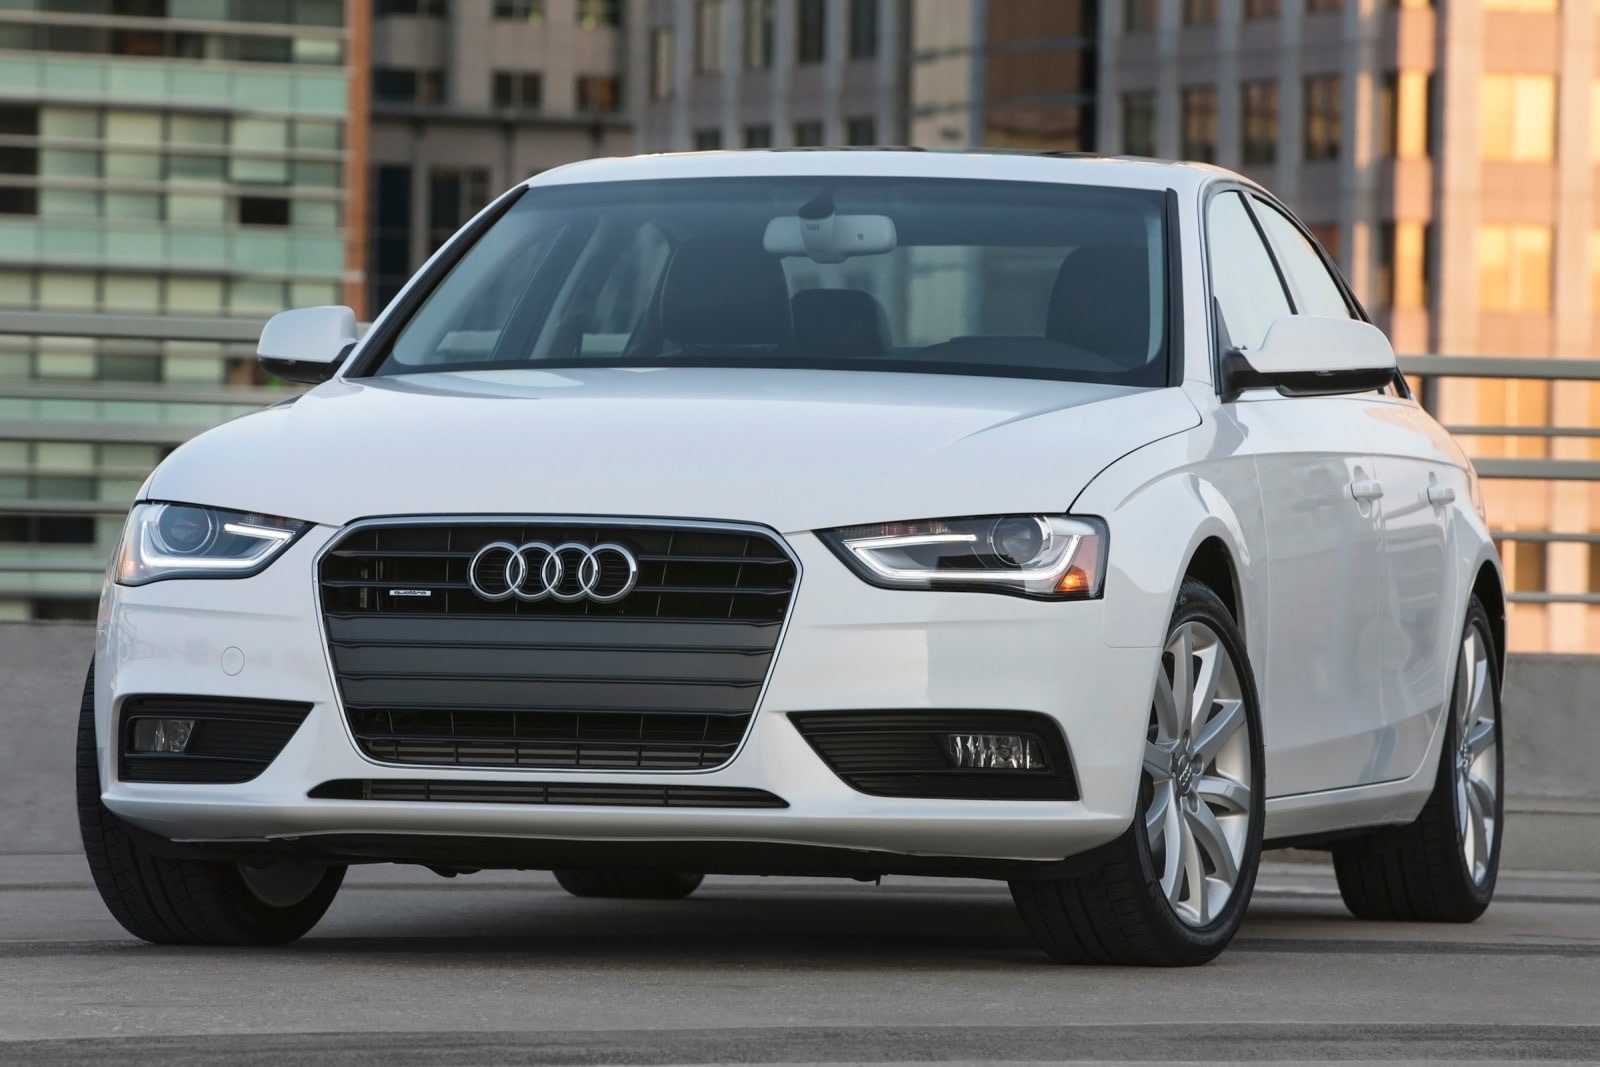 2014 Audi A4 Review & Ratings | Edmunds